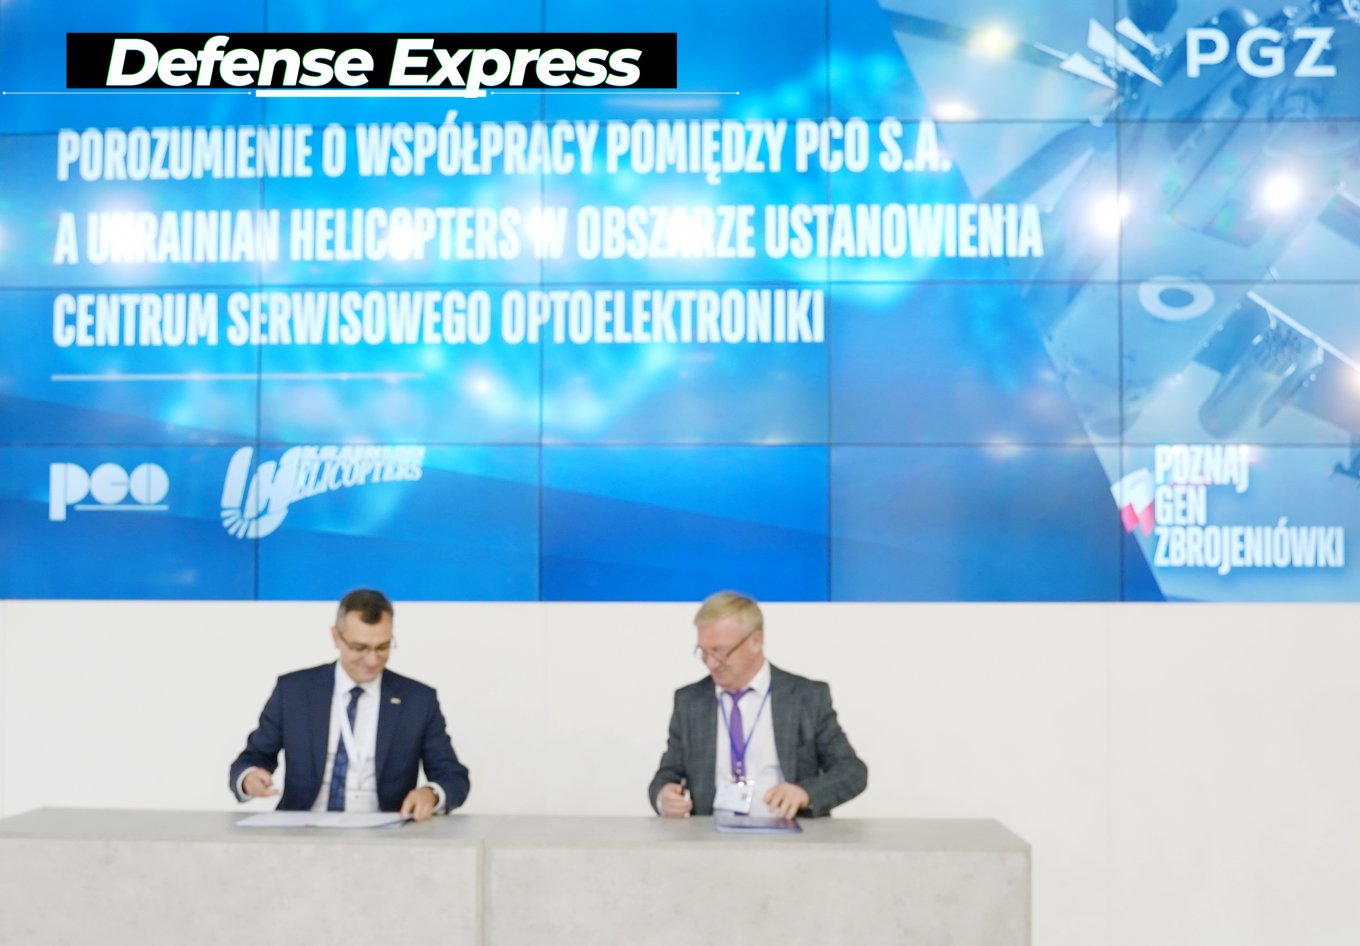 MSPO-2021, Українські вертольоти та польска PCO S.A. підписали угоду про співробітництво,  Defense Express